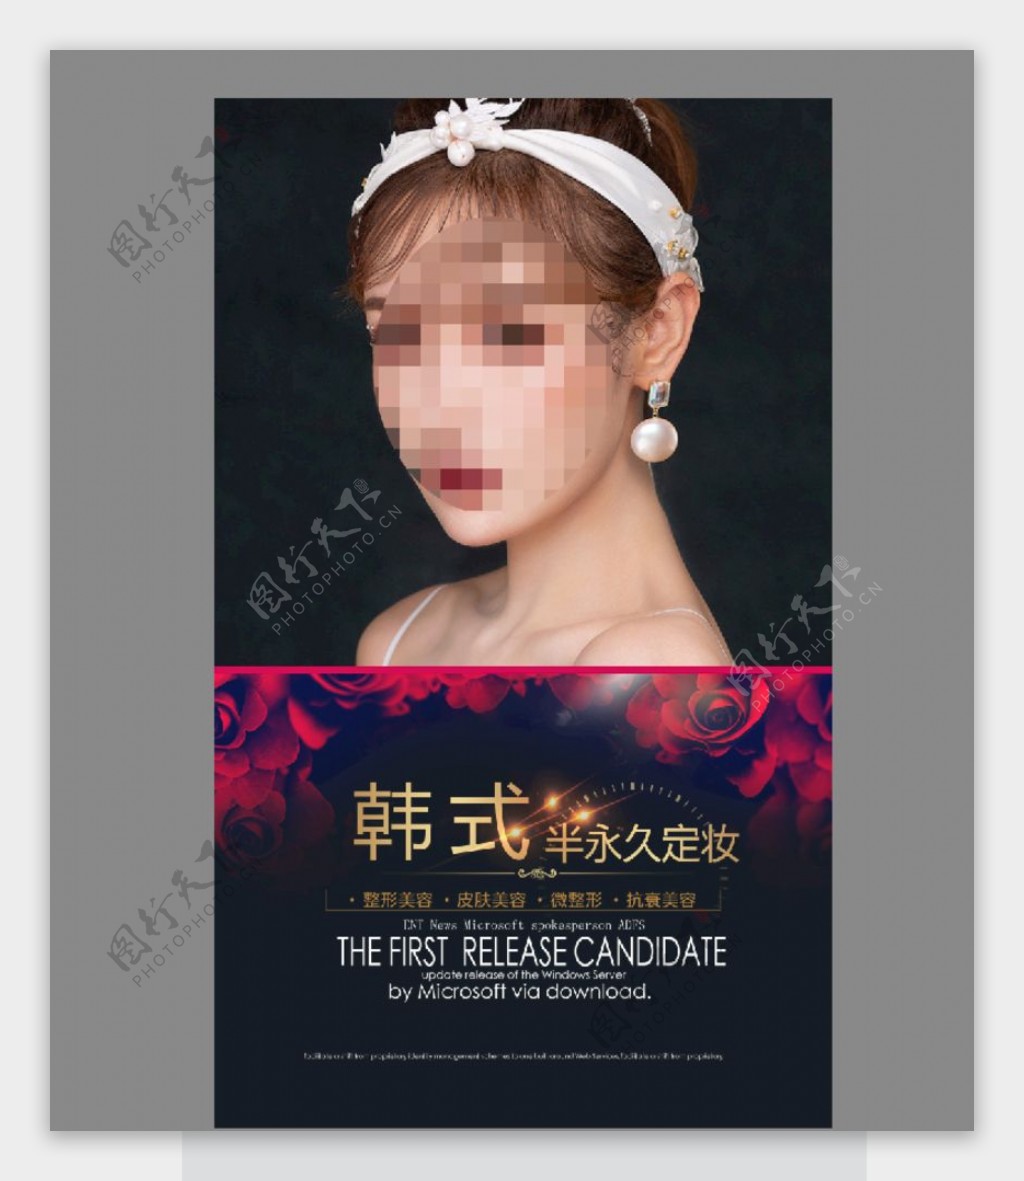 韩式睫毛海报定妆眉图片